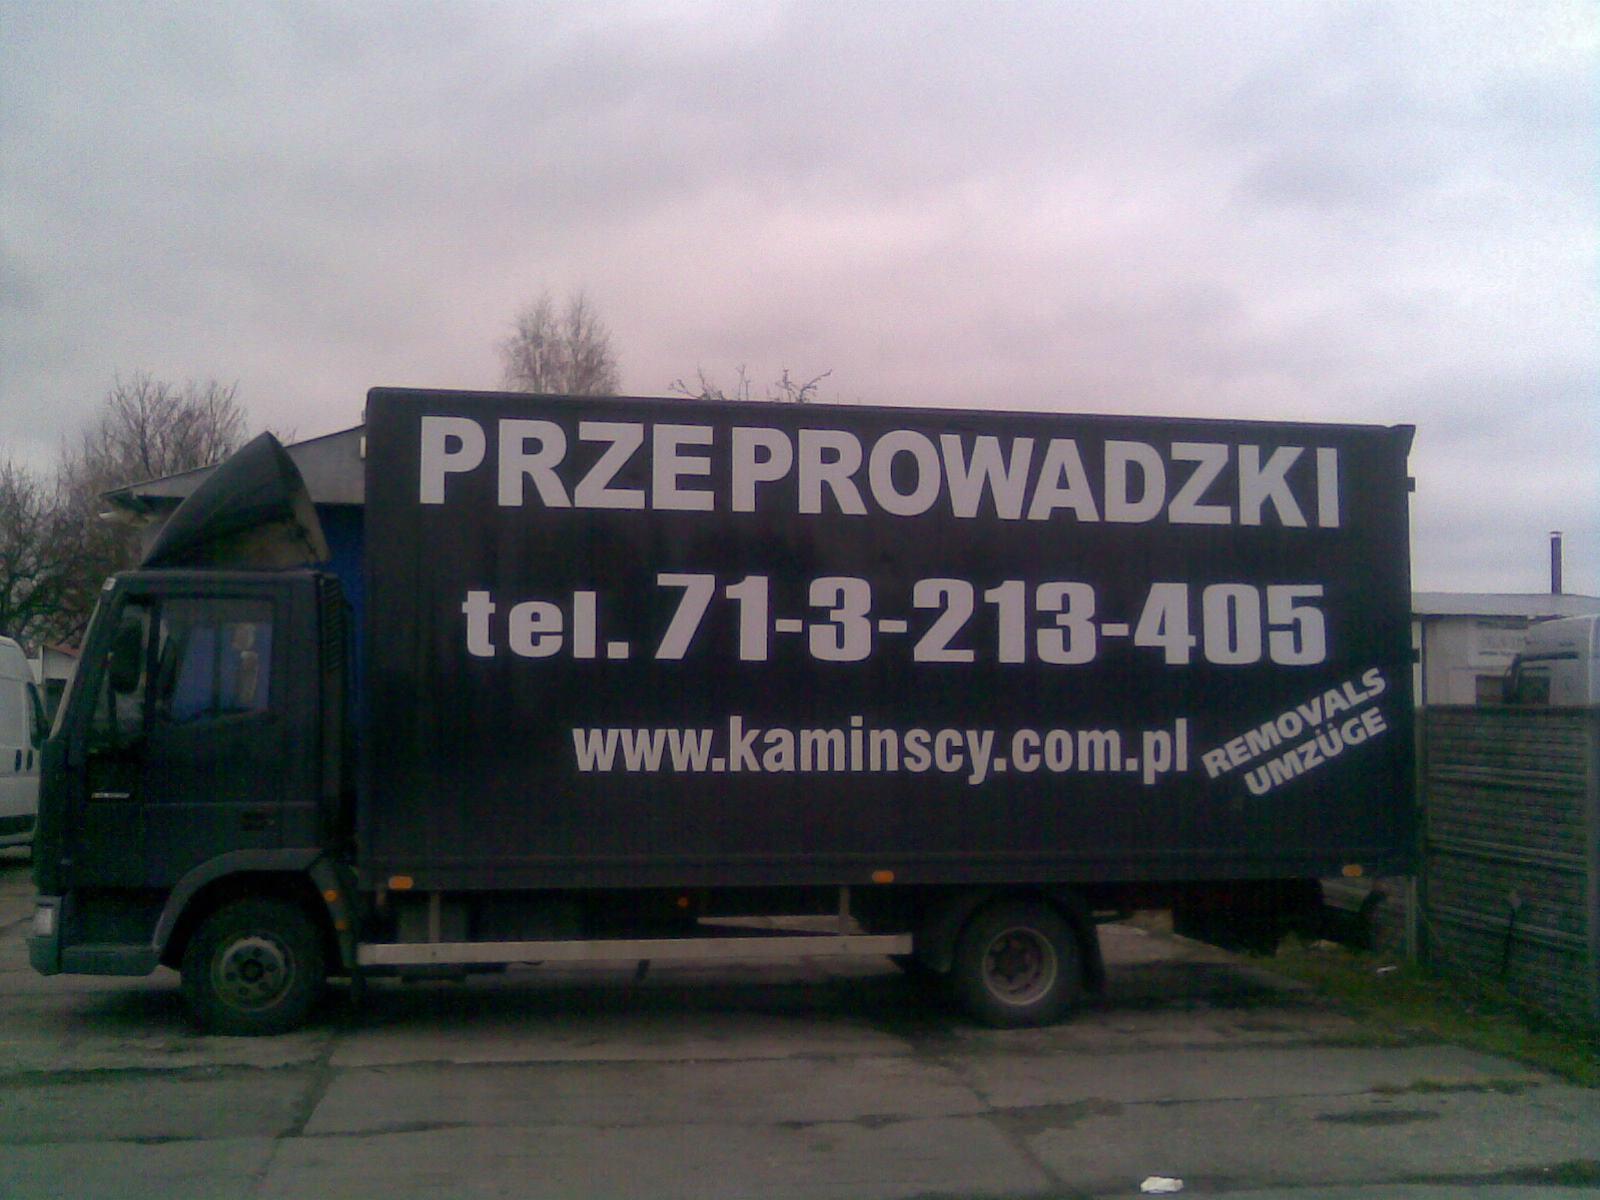 PRZEPROWADZKI Poznan ponad 25 lat doświadczenia, Poznań, wielkopolskie